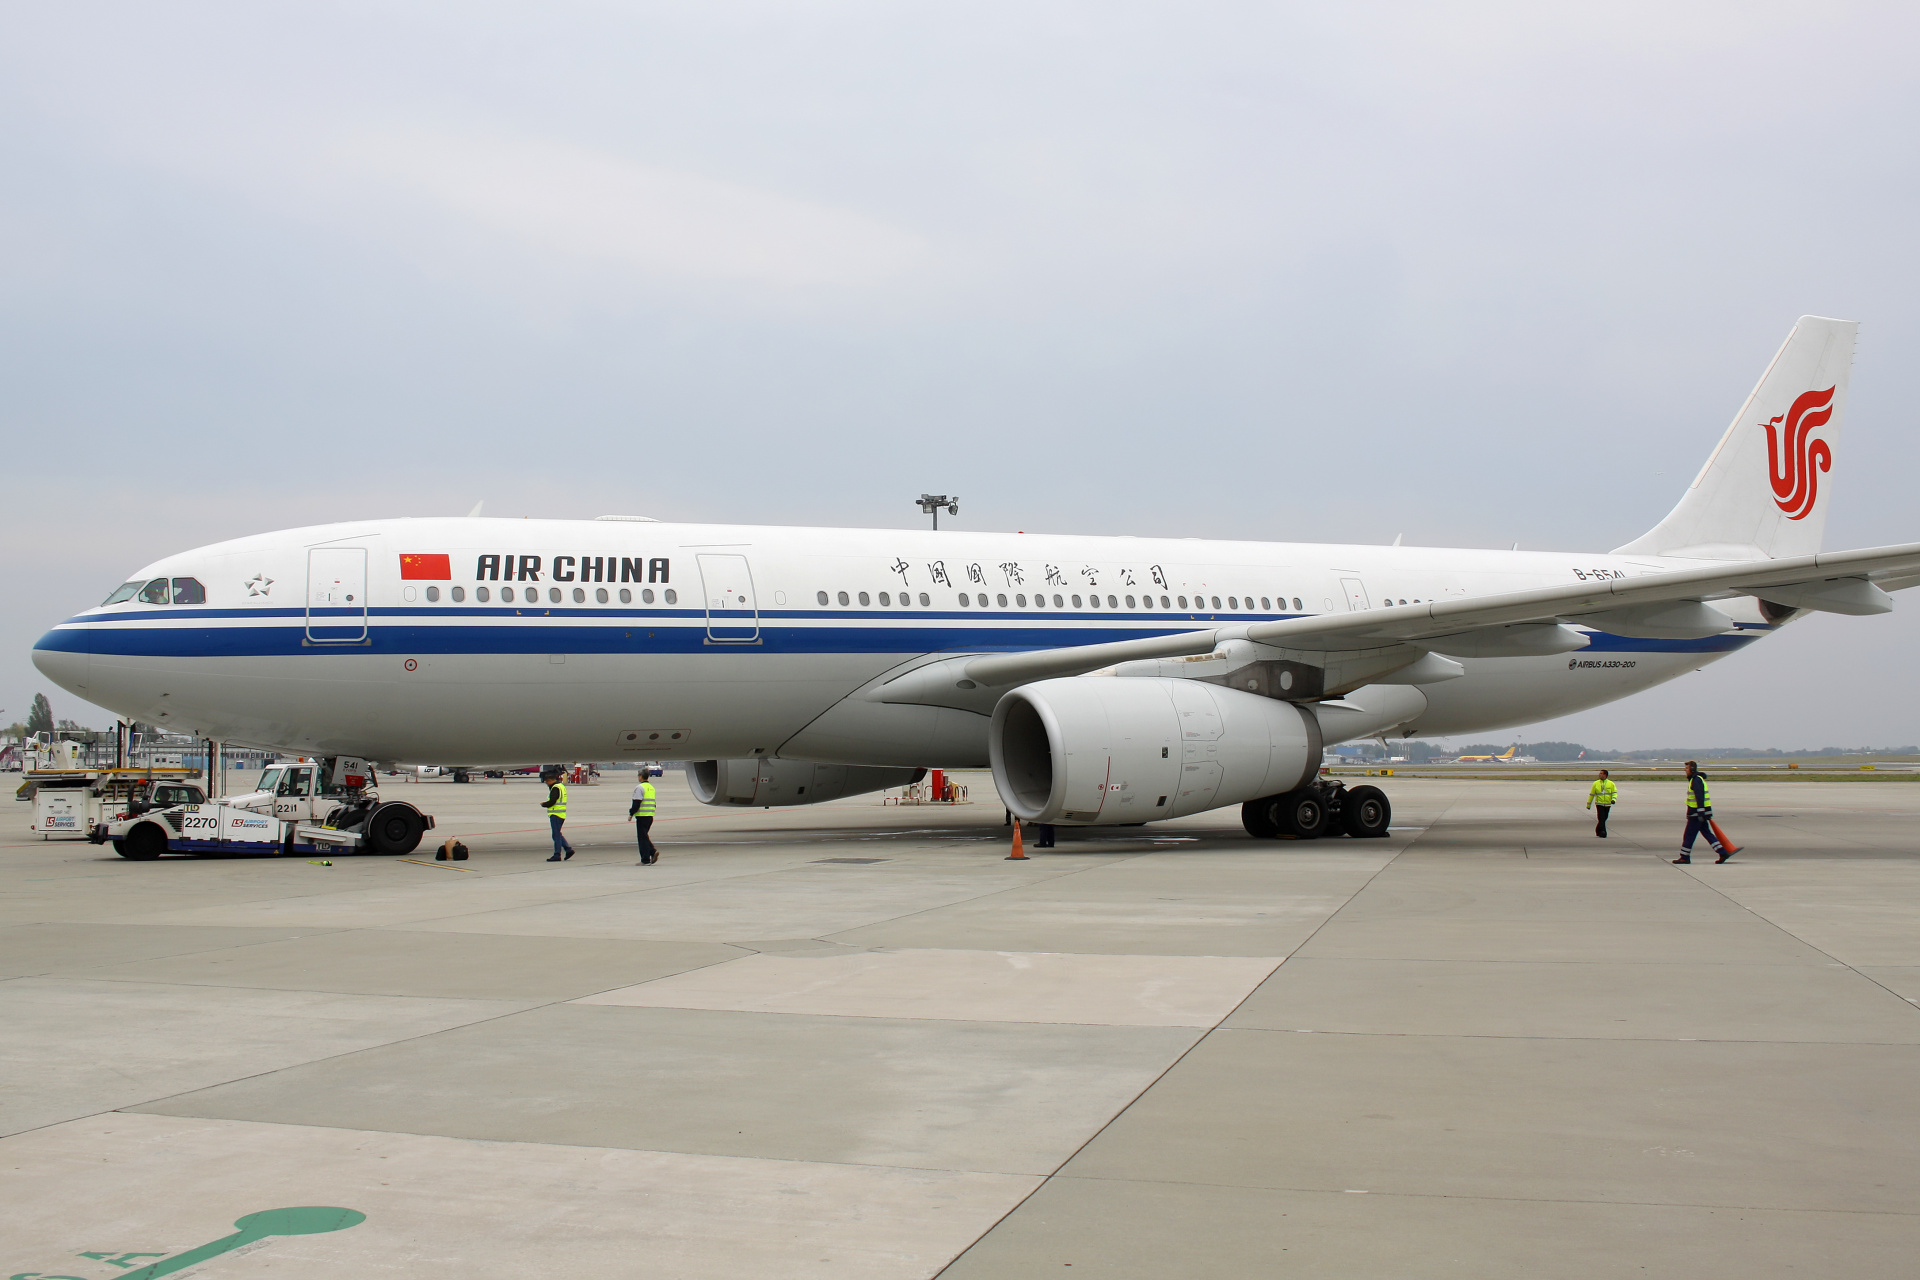 B-6541 (Aircraft » EPWA Spotting » Airbus A330-200 » Air China)